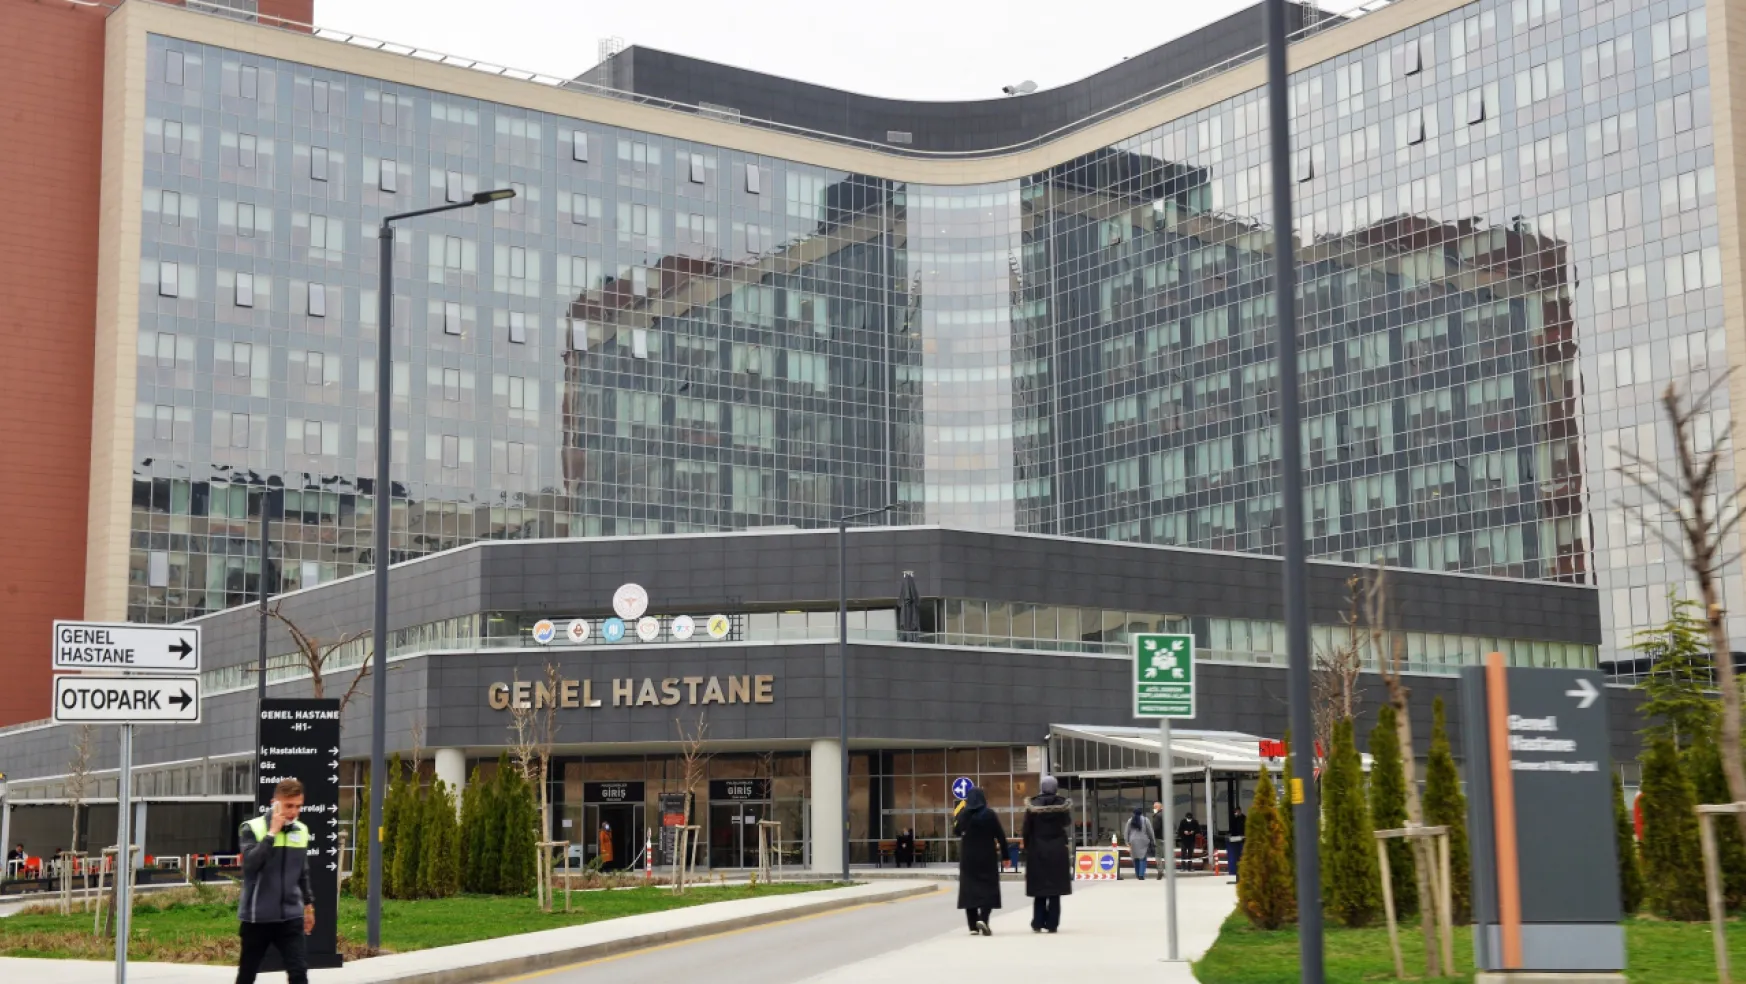 Viral Salgın Hastalıklar Artarak Devam Ediyor: Ankara Şehir Hastanesi'nde Doluluk Yüzde 100'e Yaklaştı!